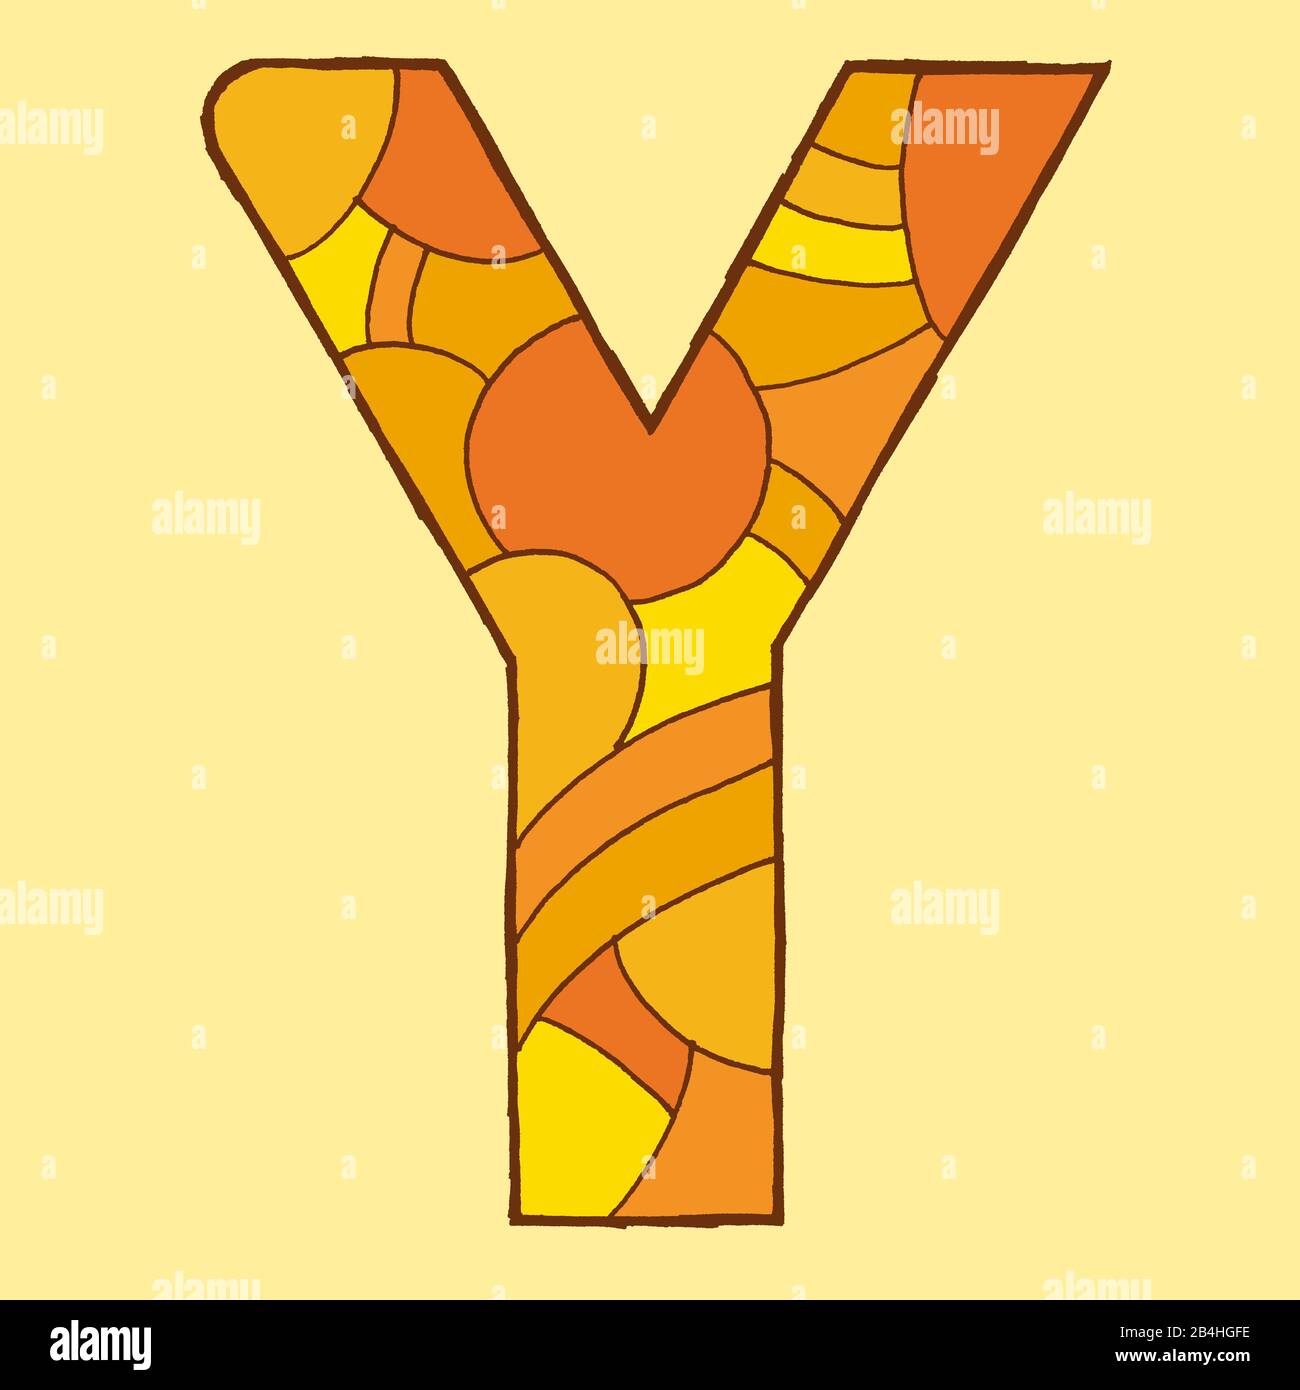 Lettera Y, disegnata come illustrazione vettoriale, in sfumature arancioni su sfondo giallo pallido in stile pop art Foto Stock